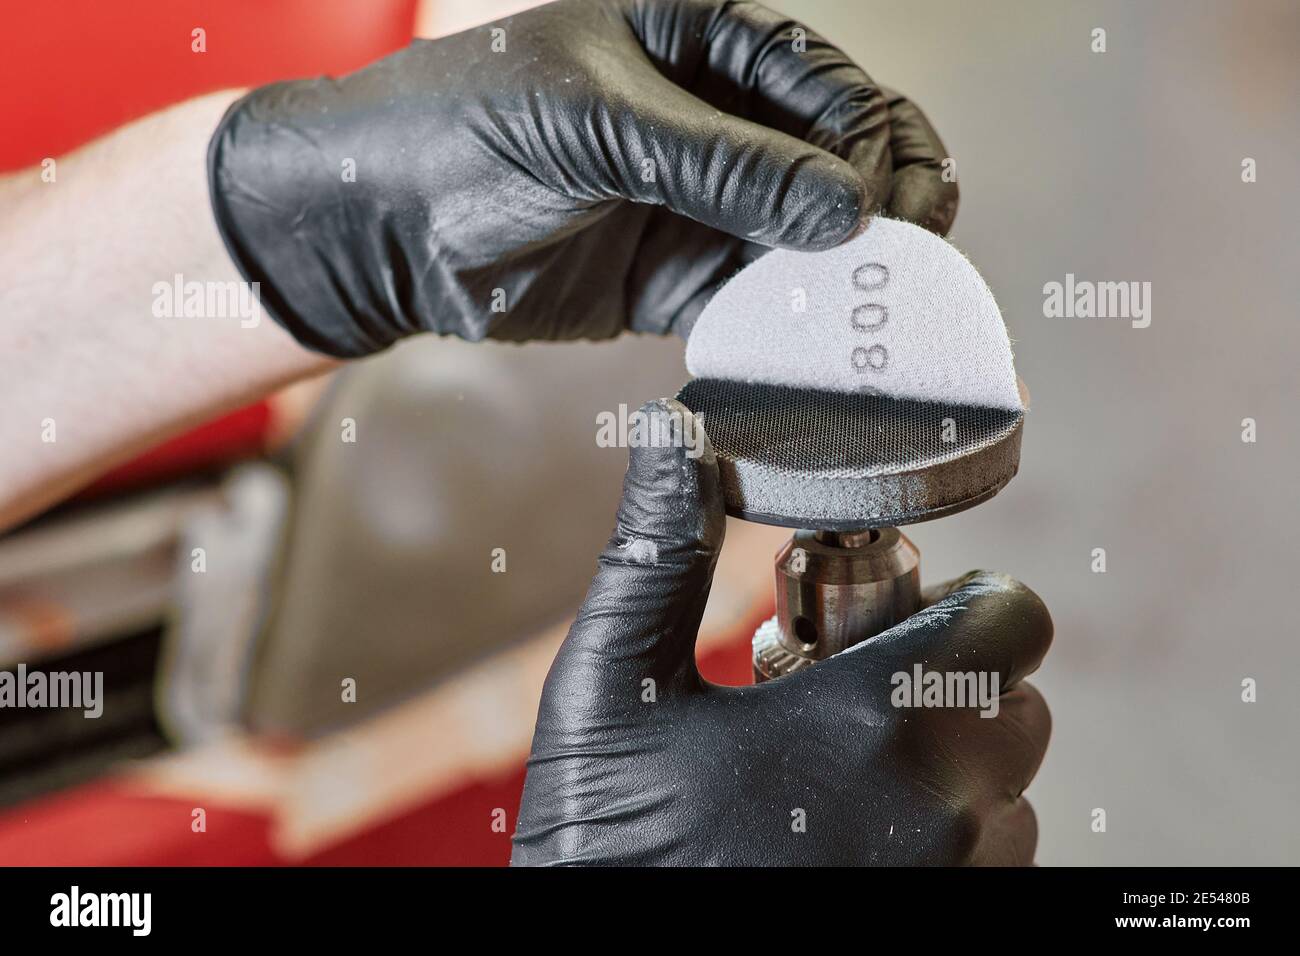 mains humaines gantées placer du papier de verre sur un polisseur. disques abrasifs. outils de polissage et concept de travail Banque D'Images